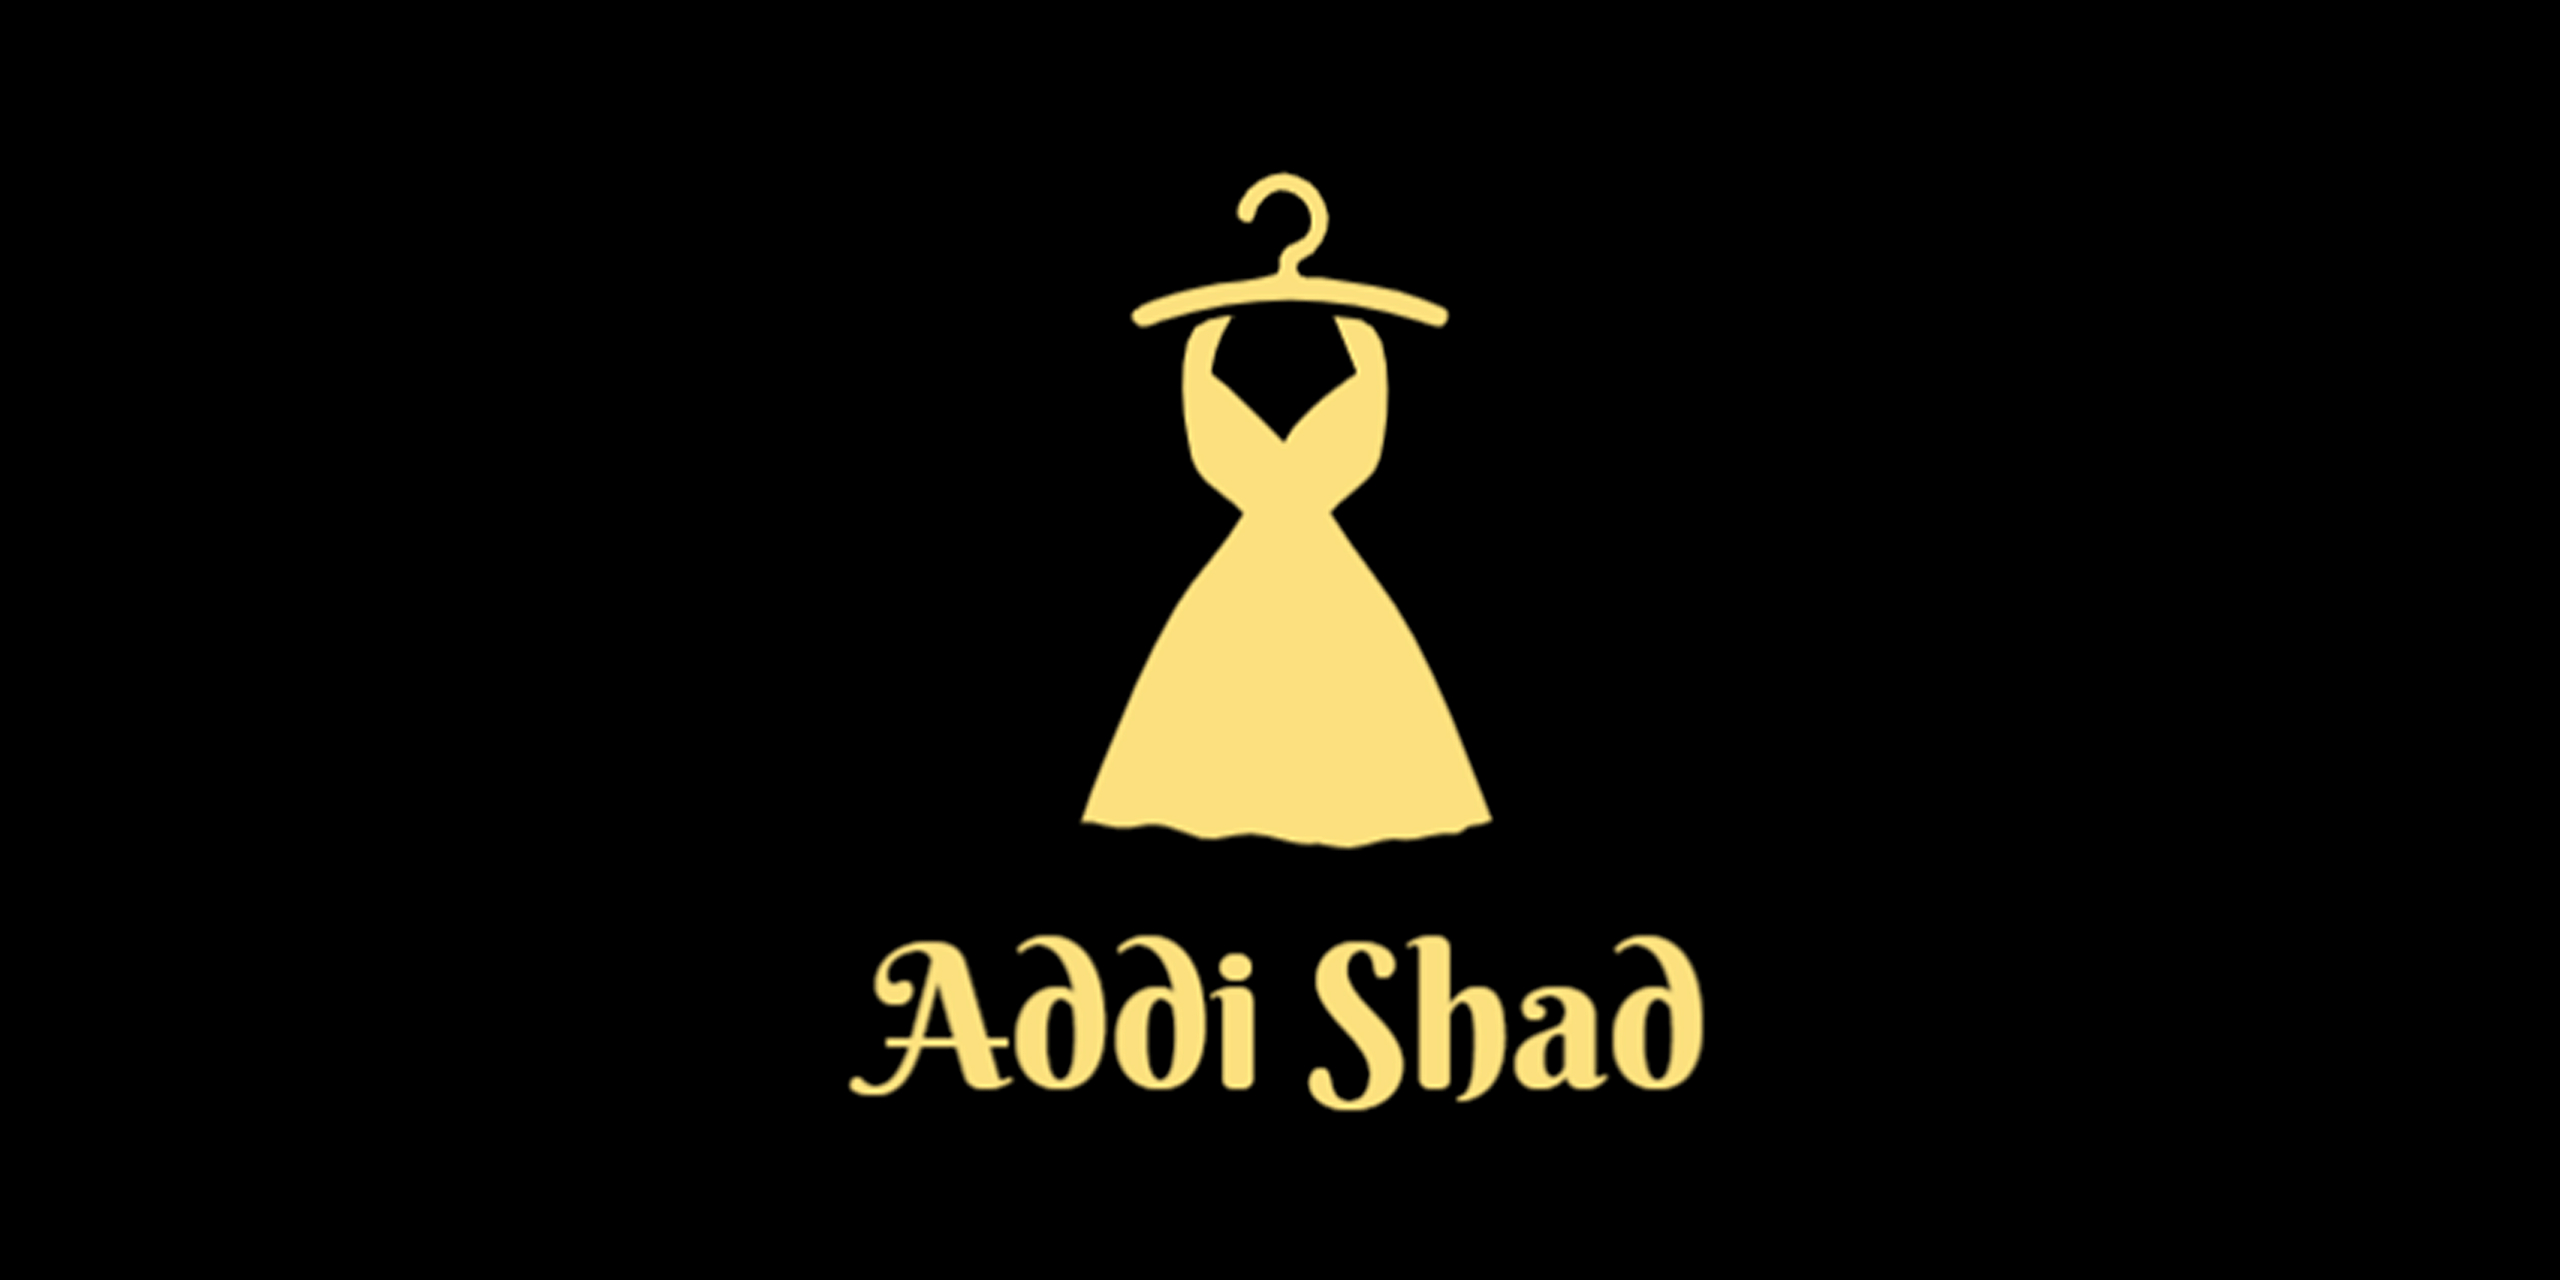 Addi Shad